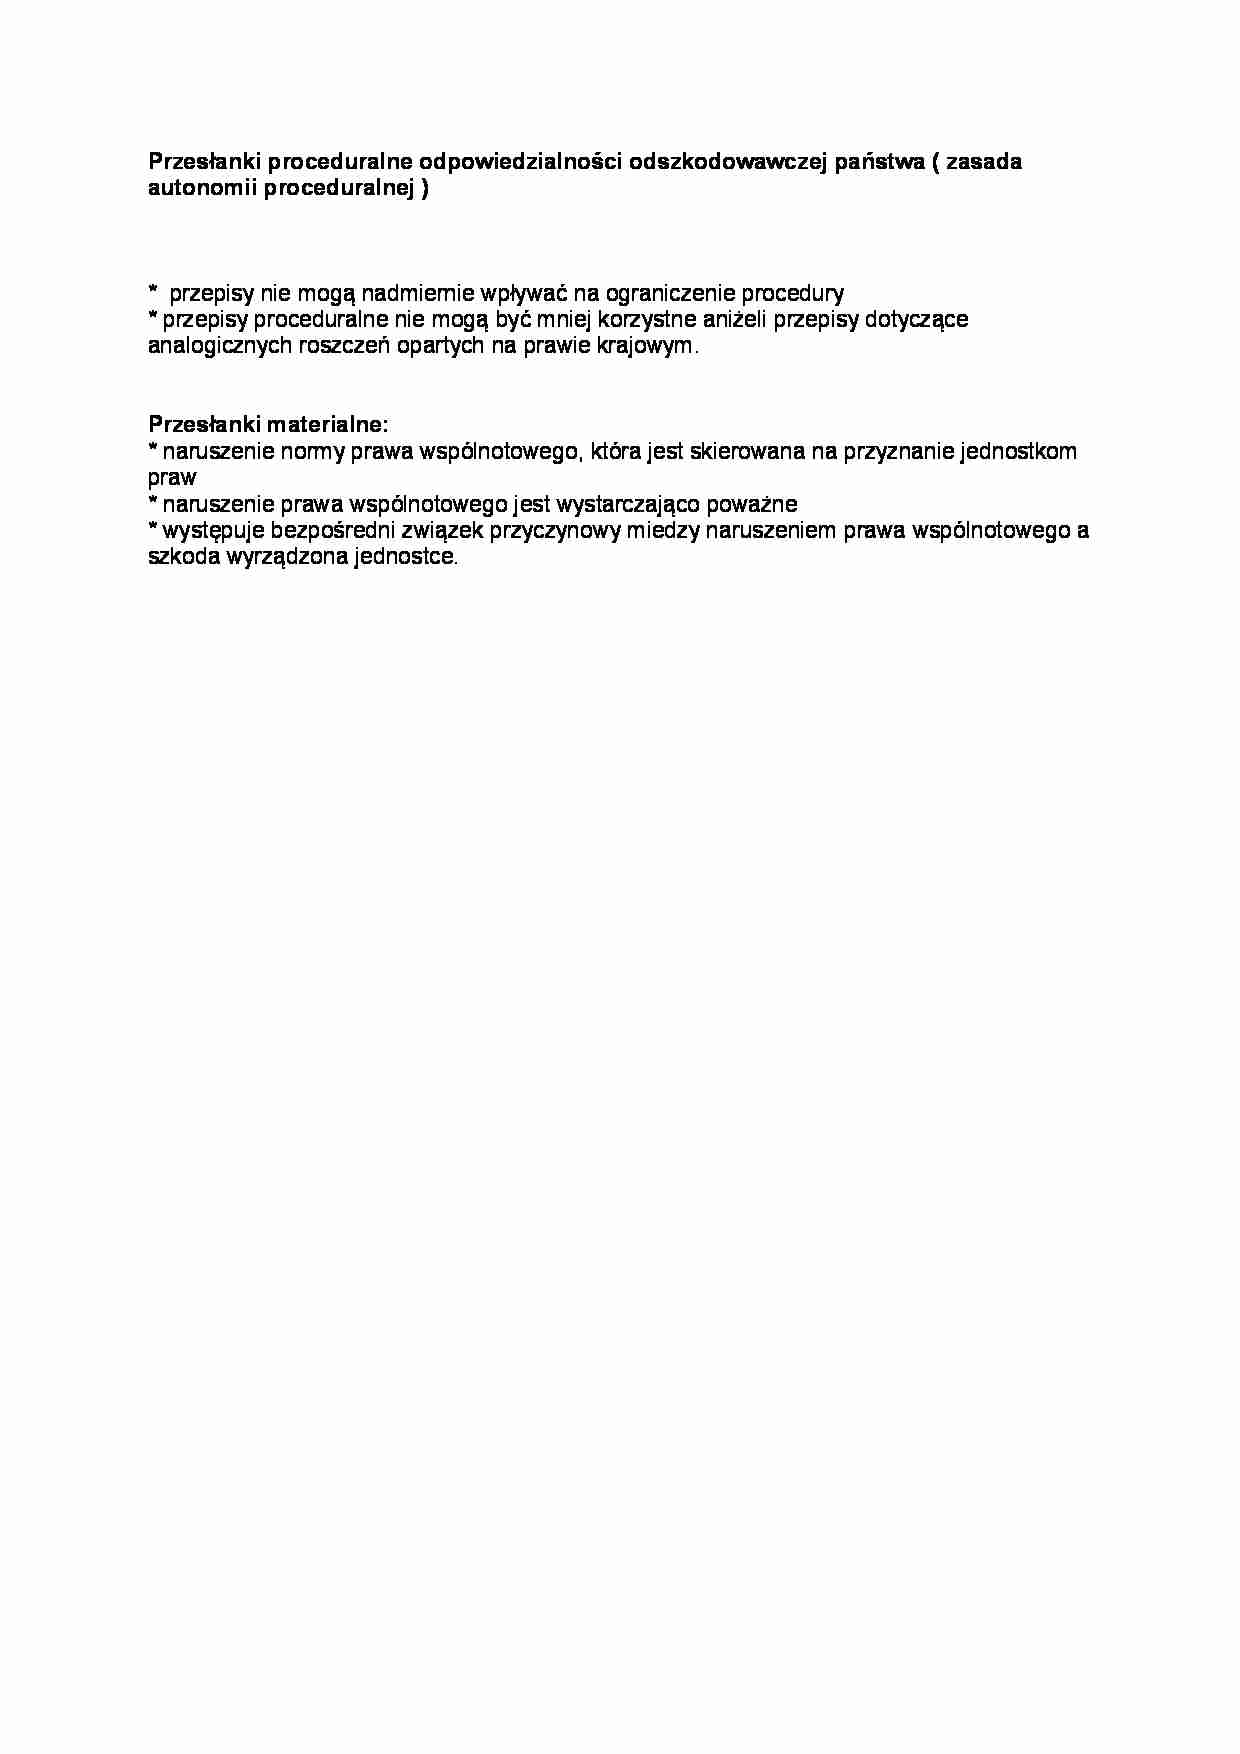 Przesłanki materialne i zasada autonomii proceduralnej-opracowanie - strona 1